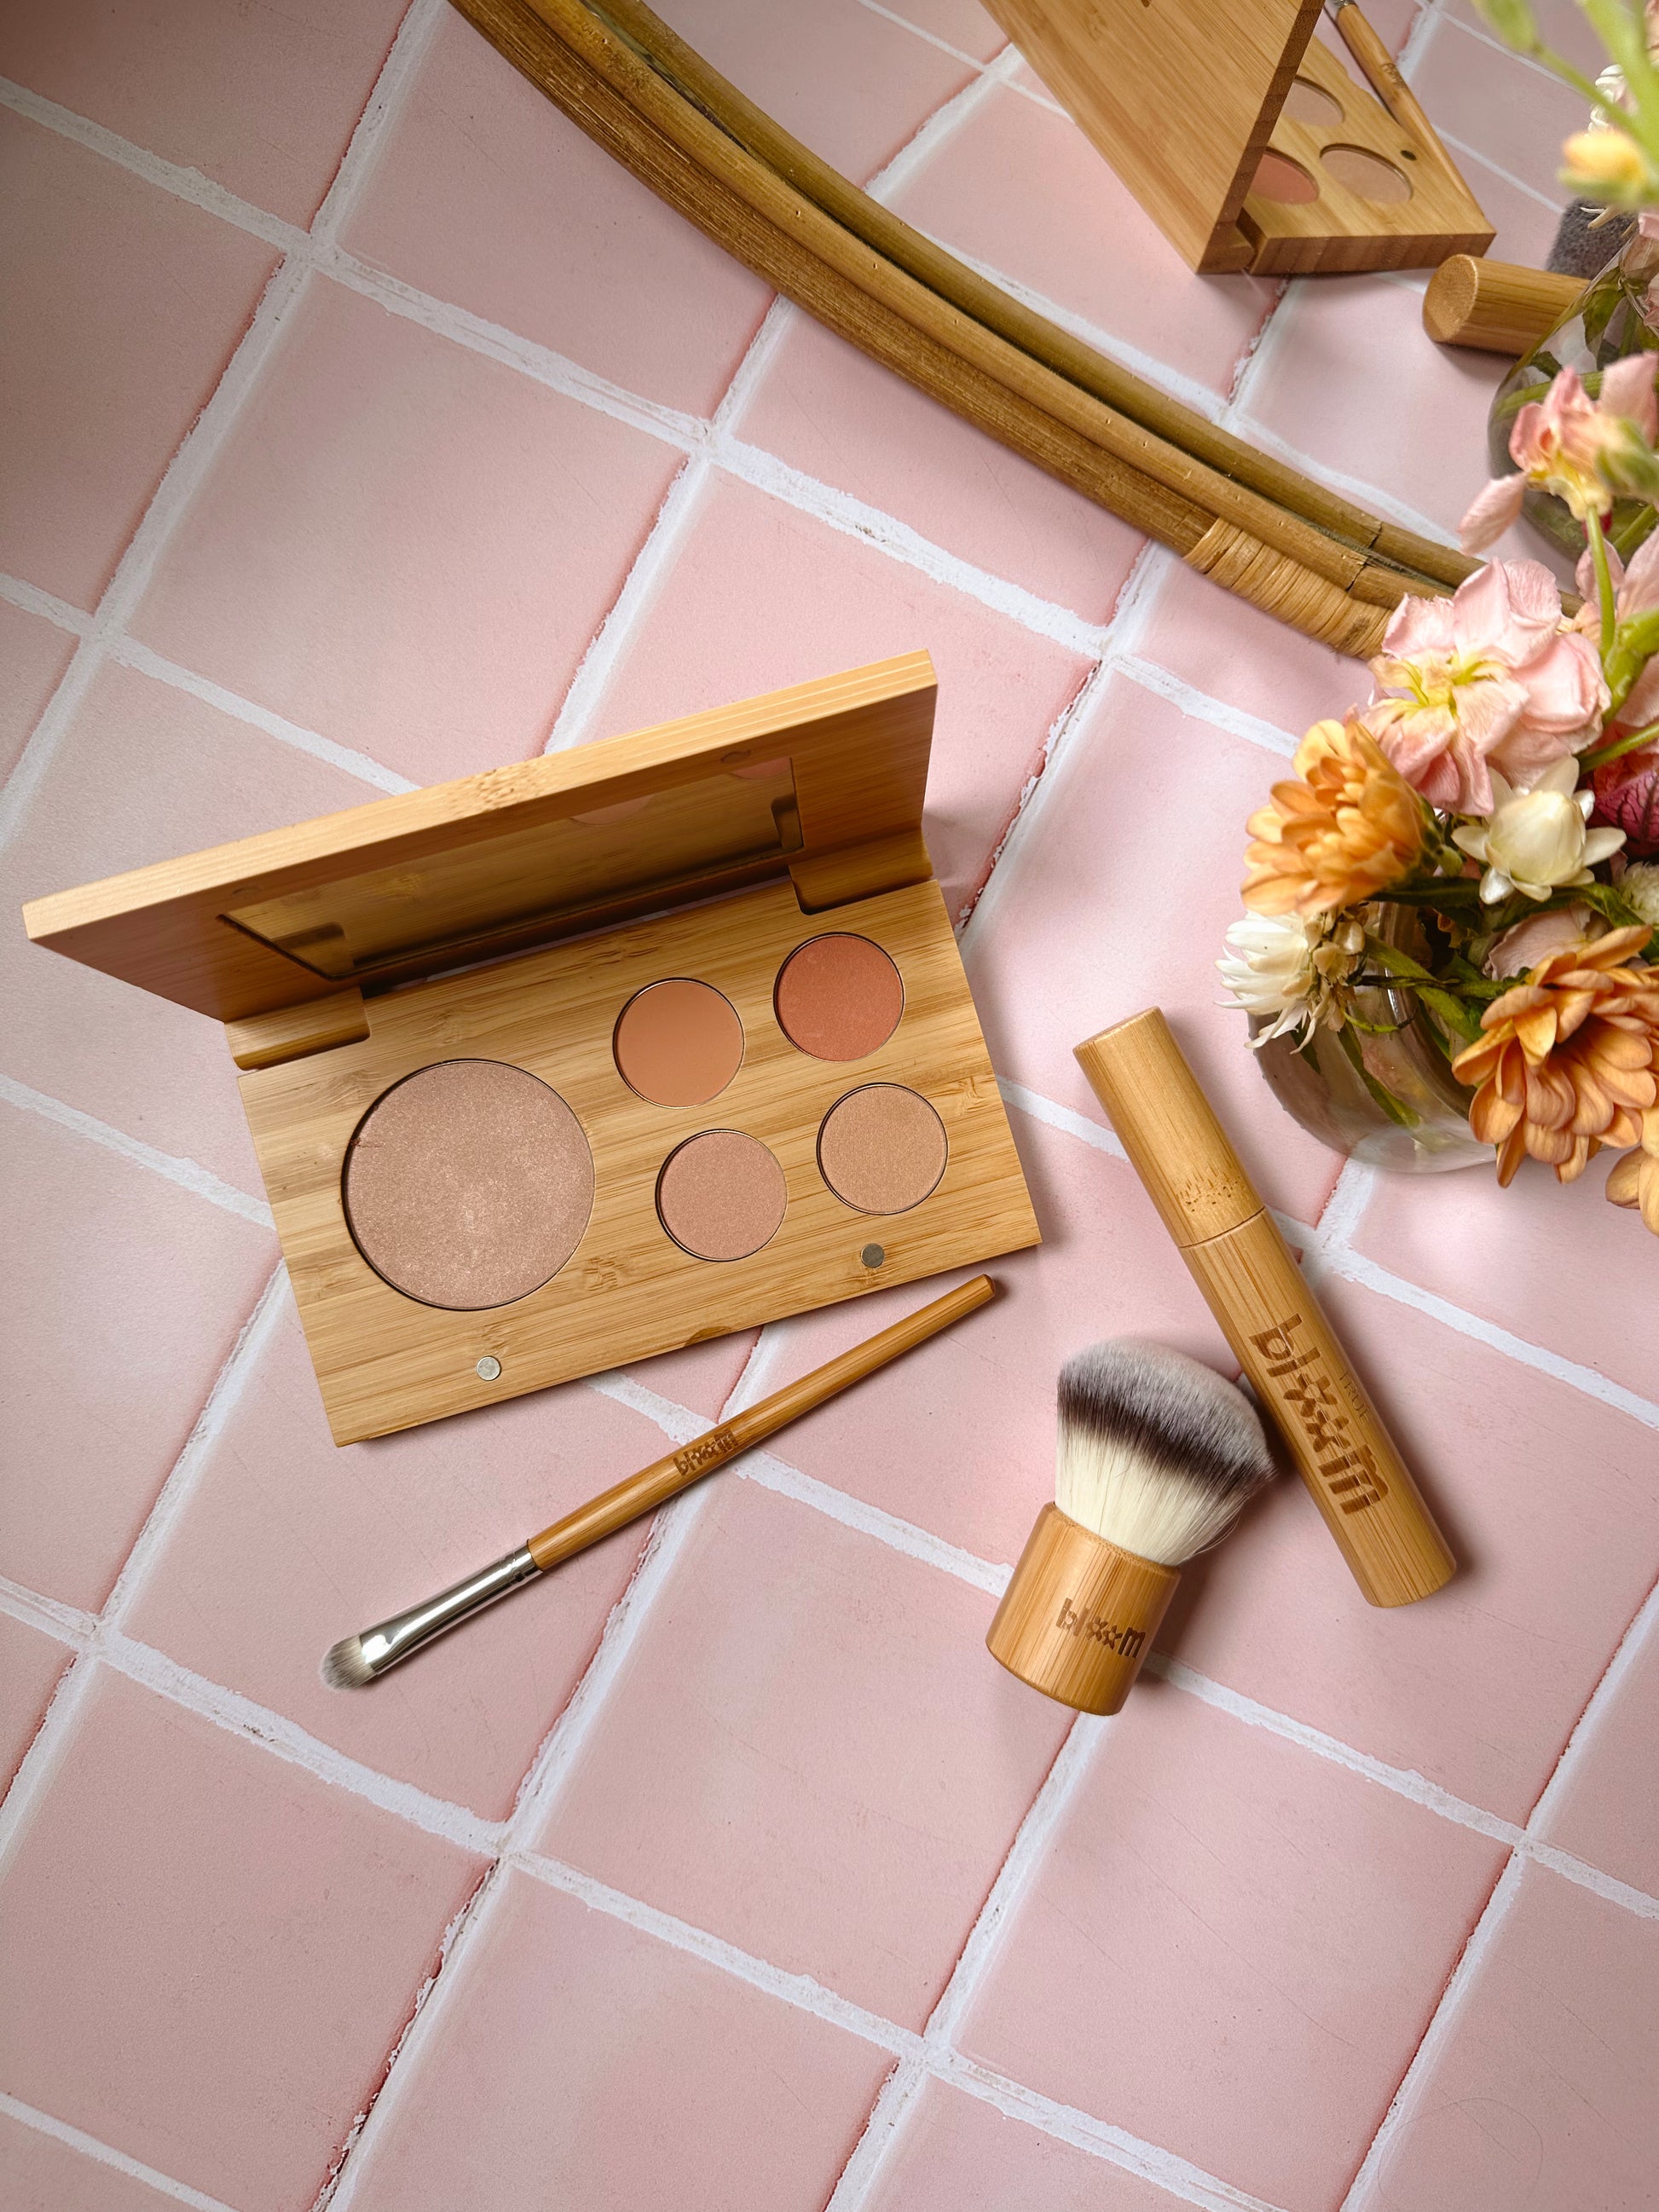 Bloom Makeup Kit – Truebloomkids